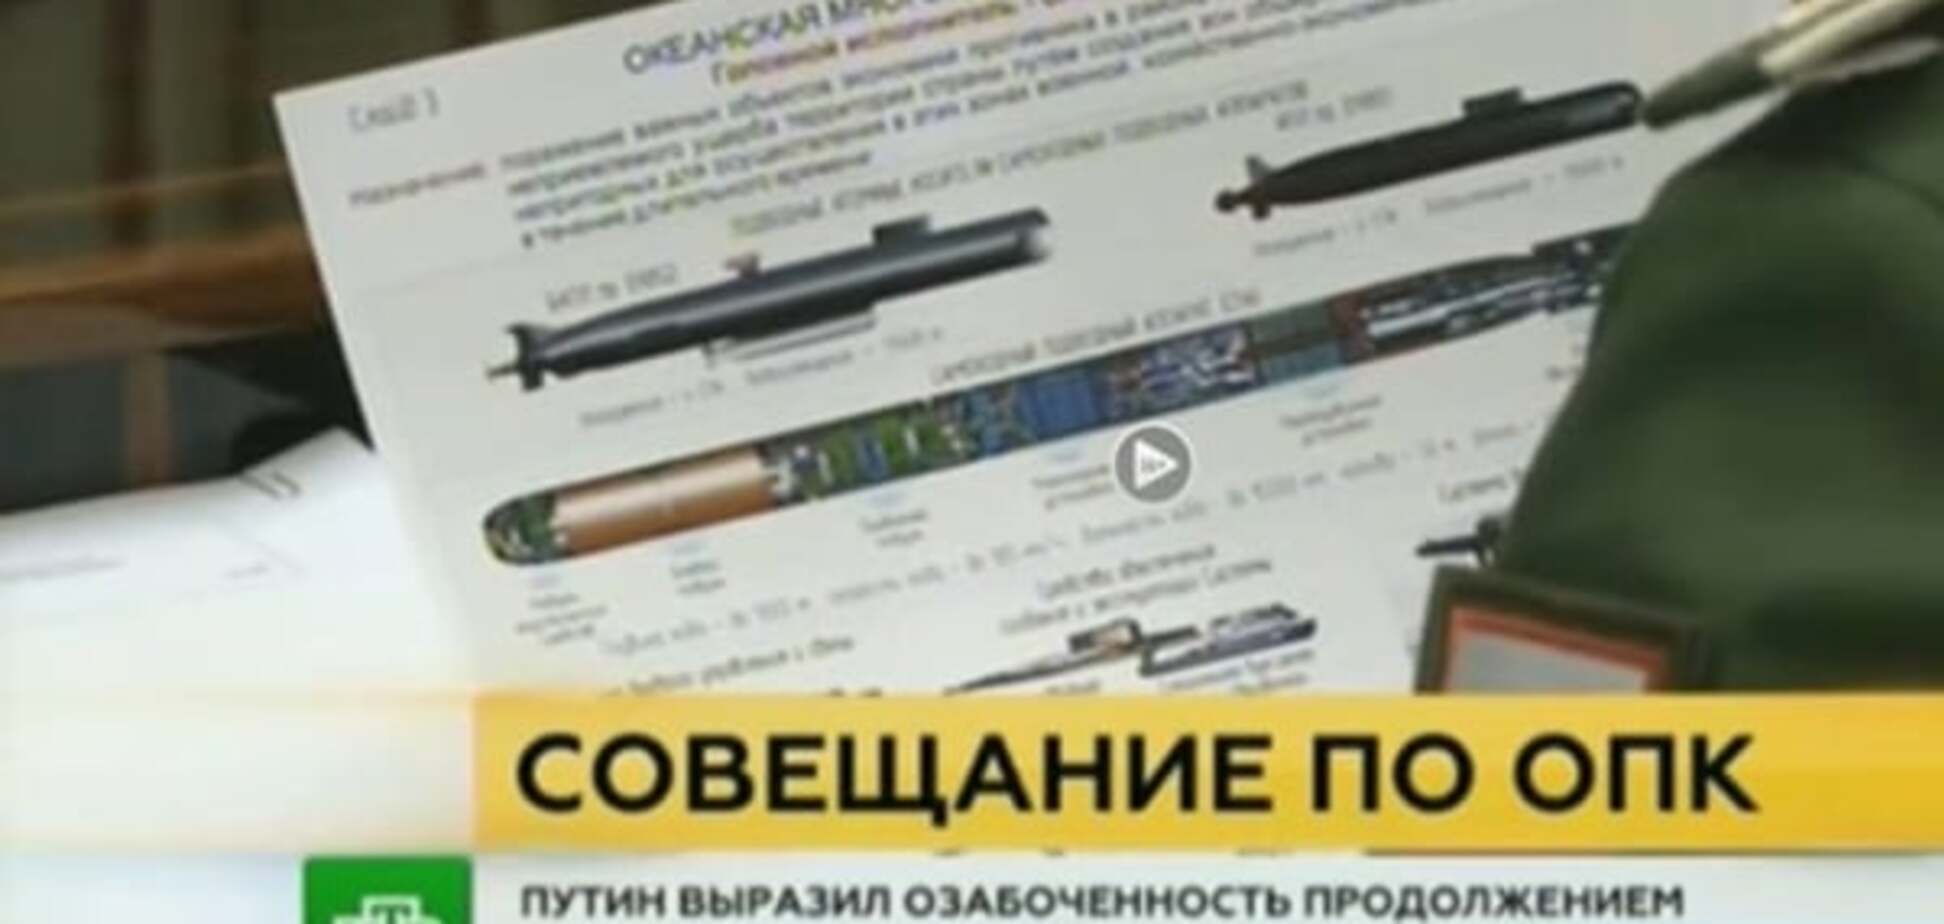 Упс: секретні документи про новітнє озброєння Росії випадково потрапили в ефір